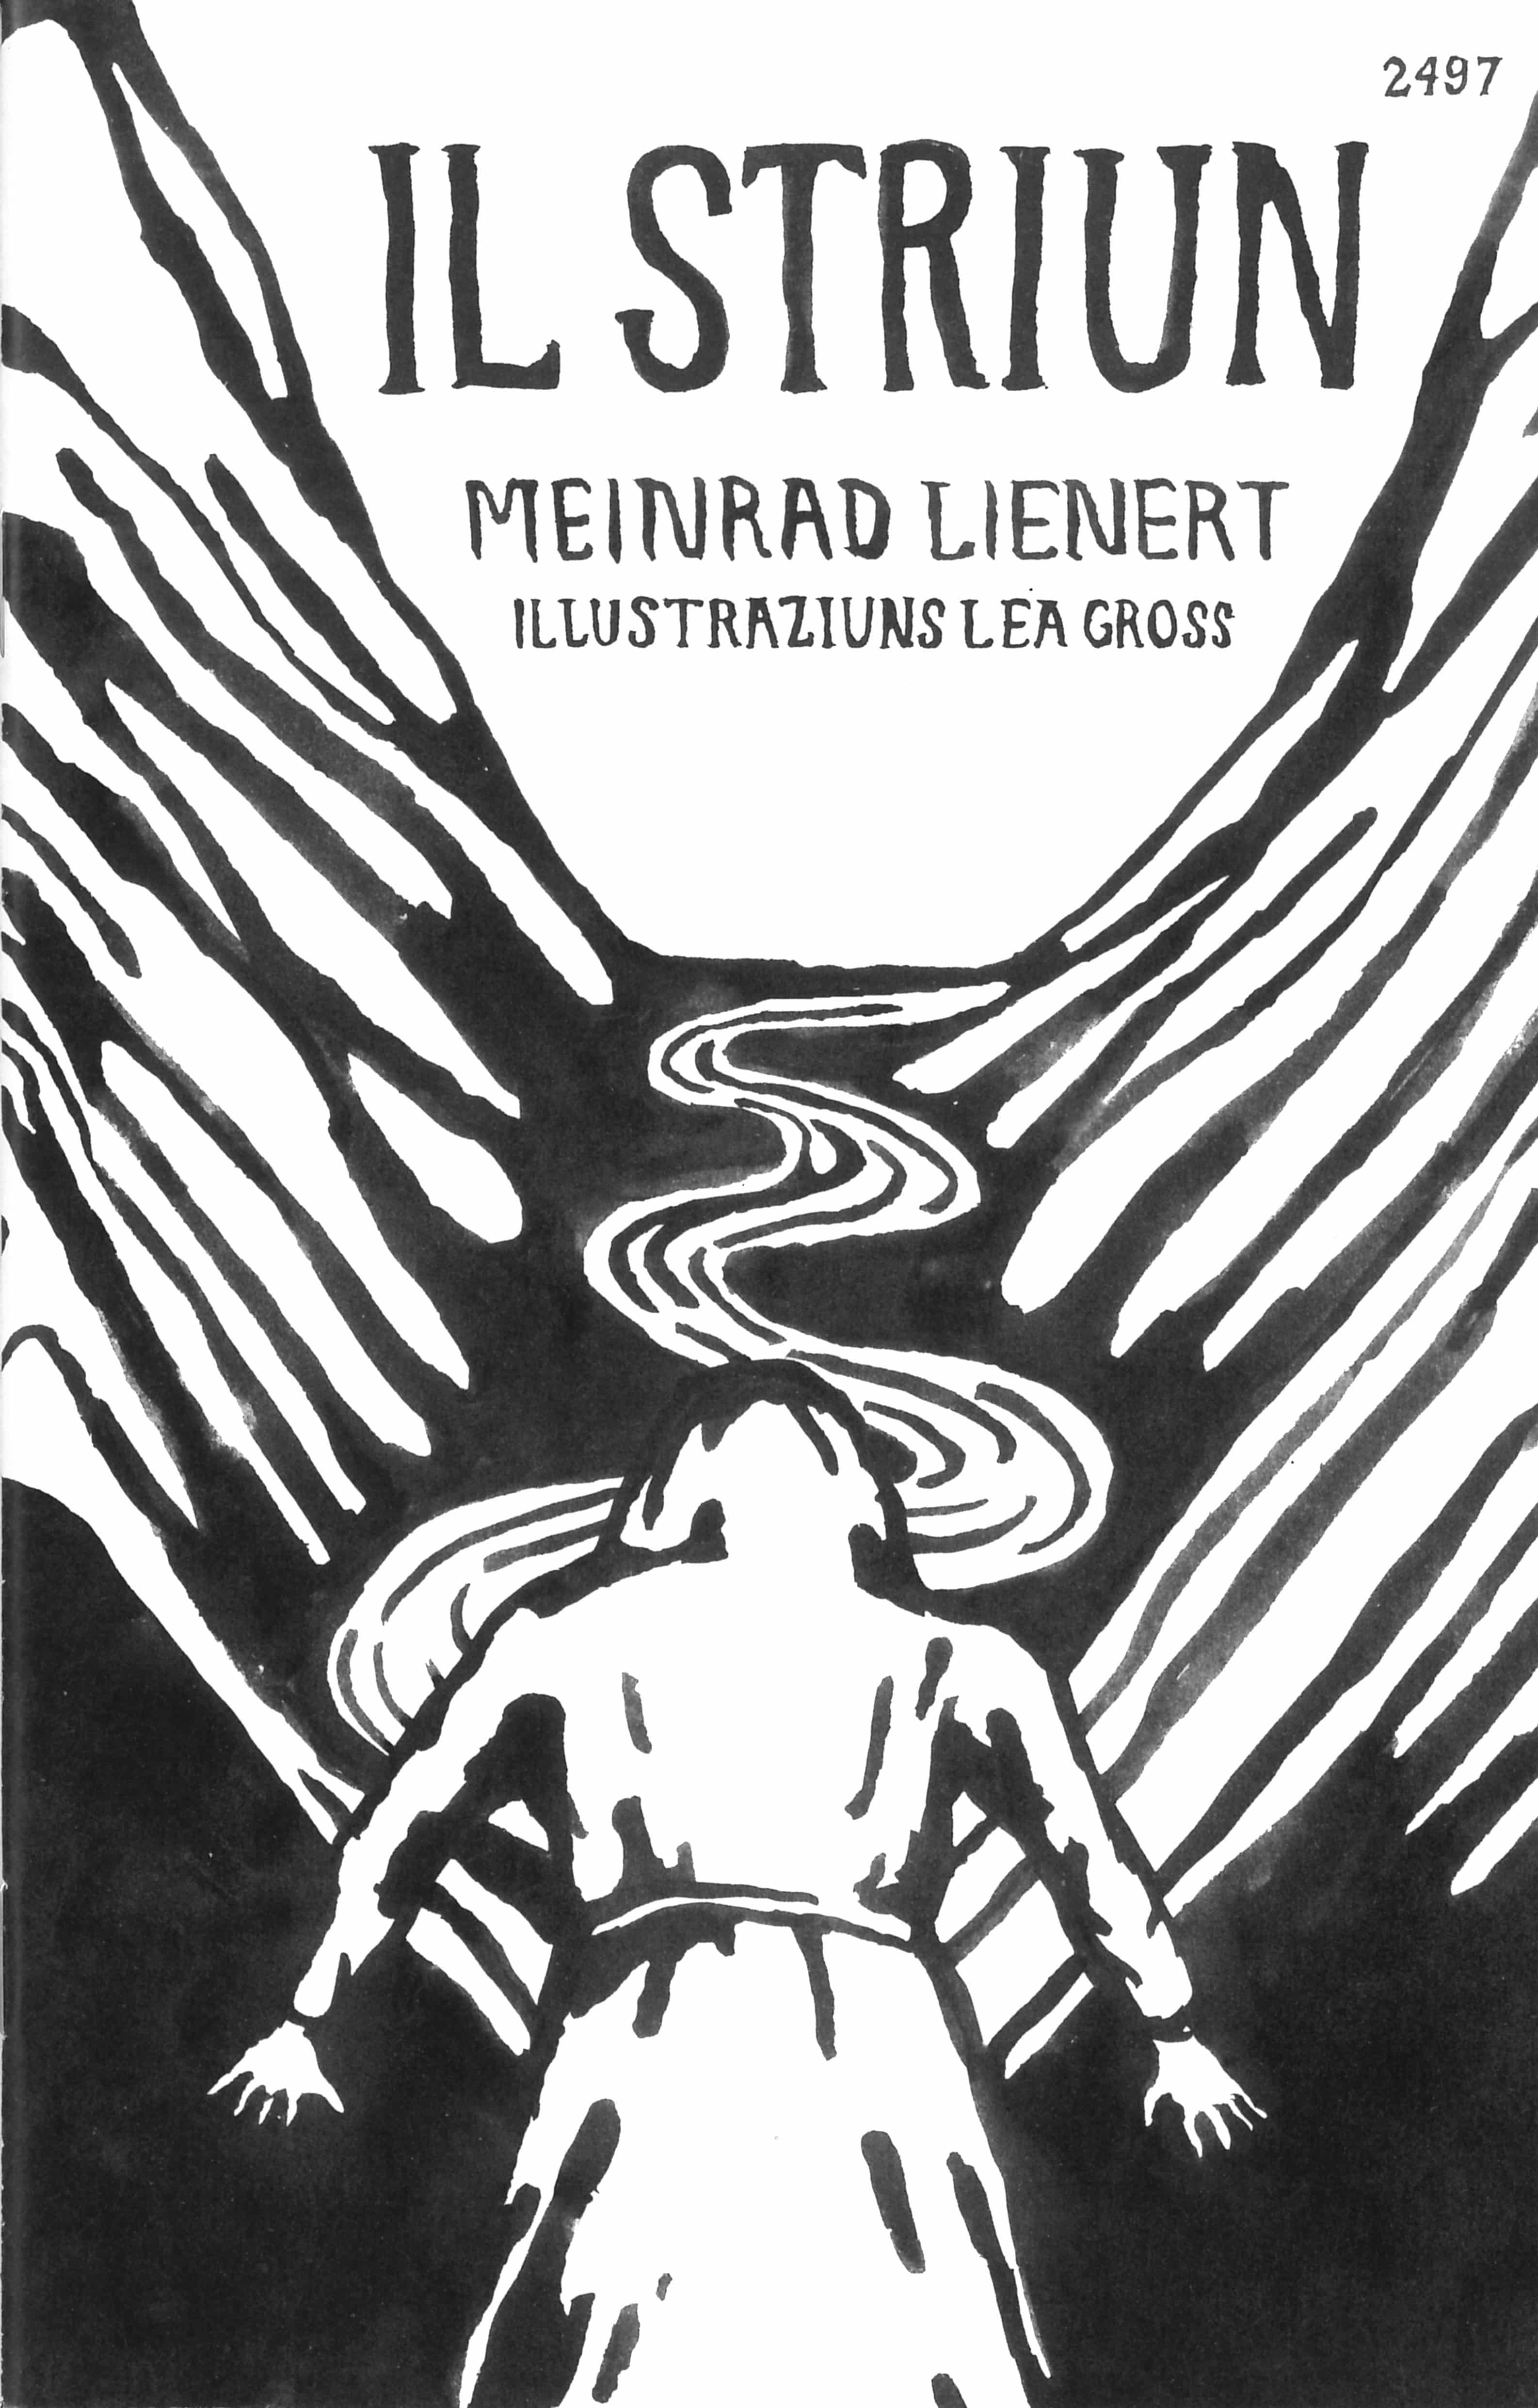 Il striun, ein Buch von Meinrad Lienert, Illustration von Lea Gross, SJW Verlag, Sagen, Schweiz